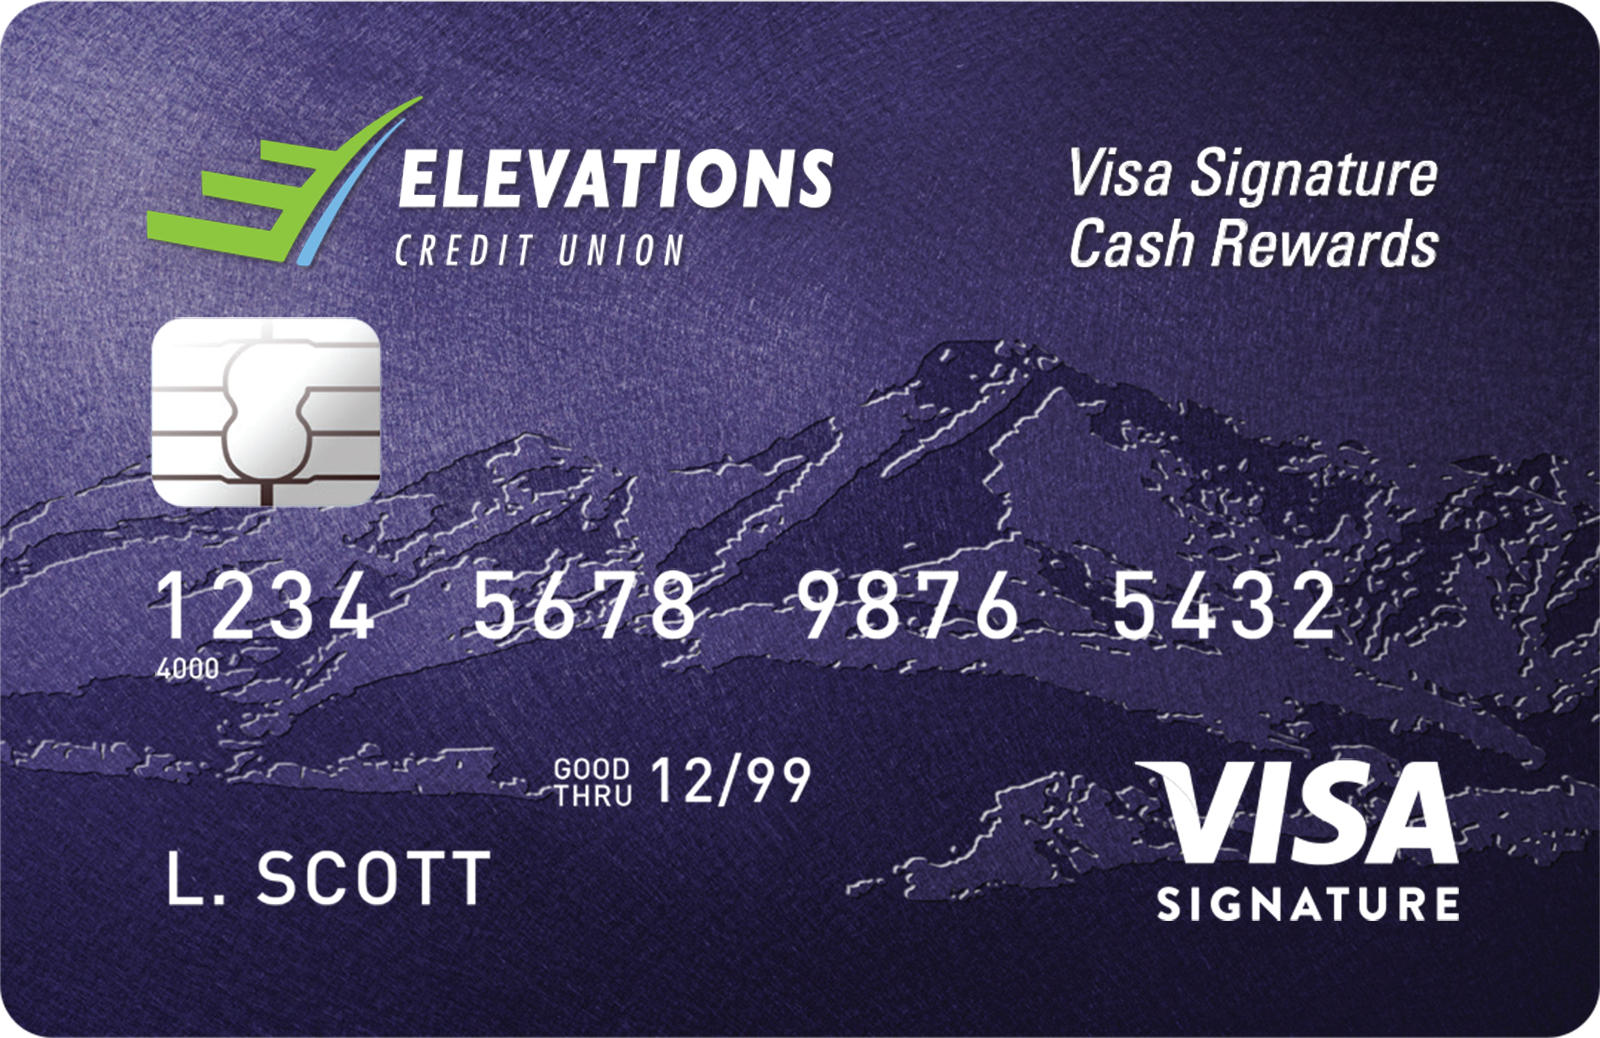 Elevations Visa Siganture Cash Rewards card